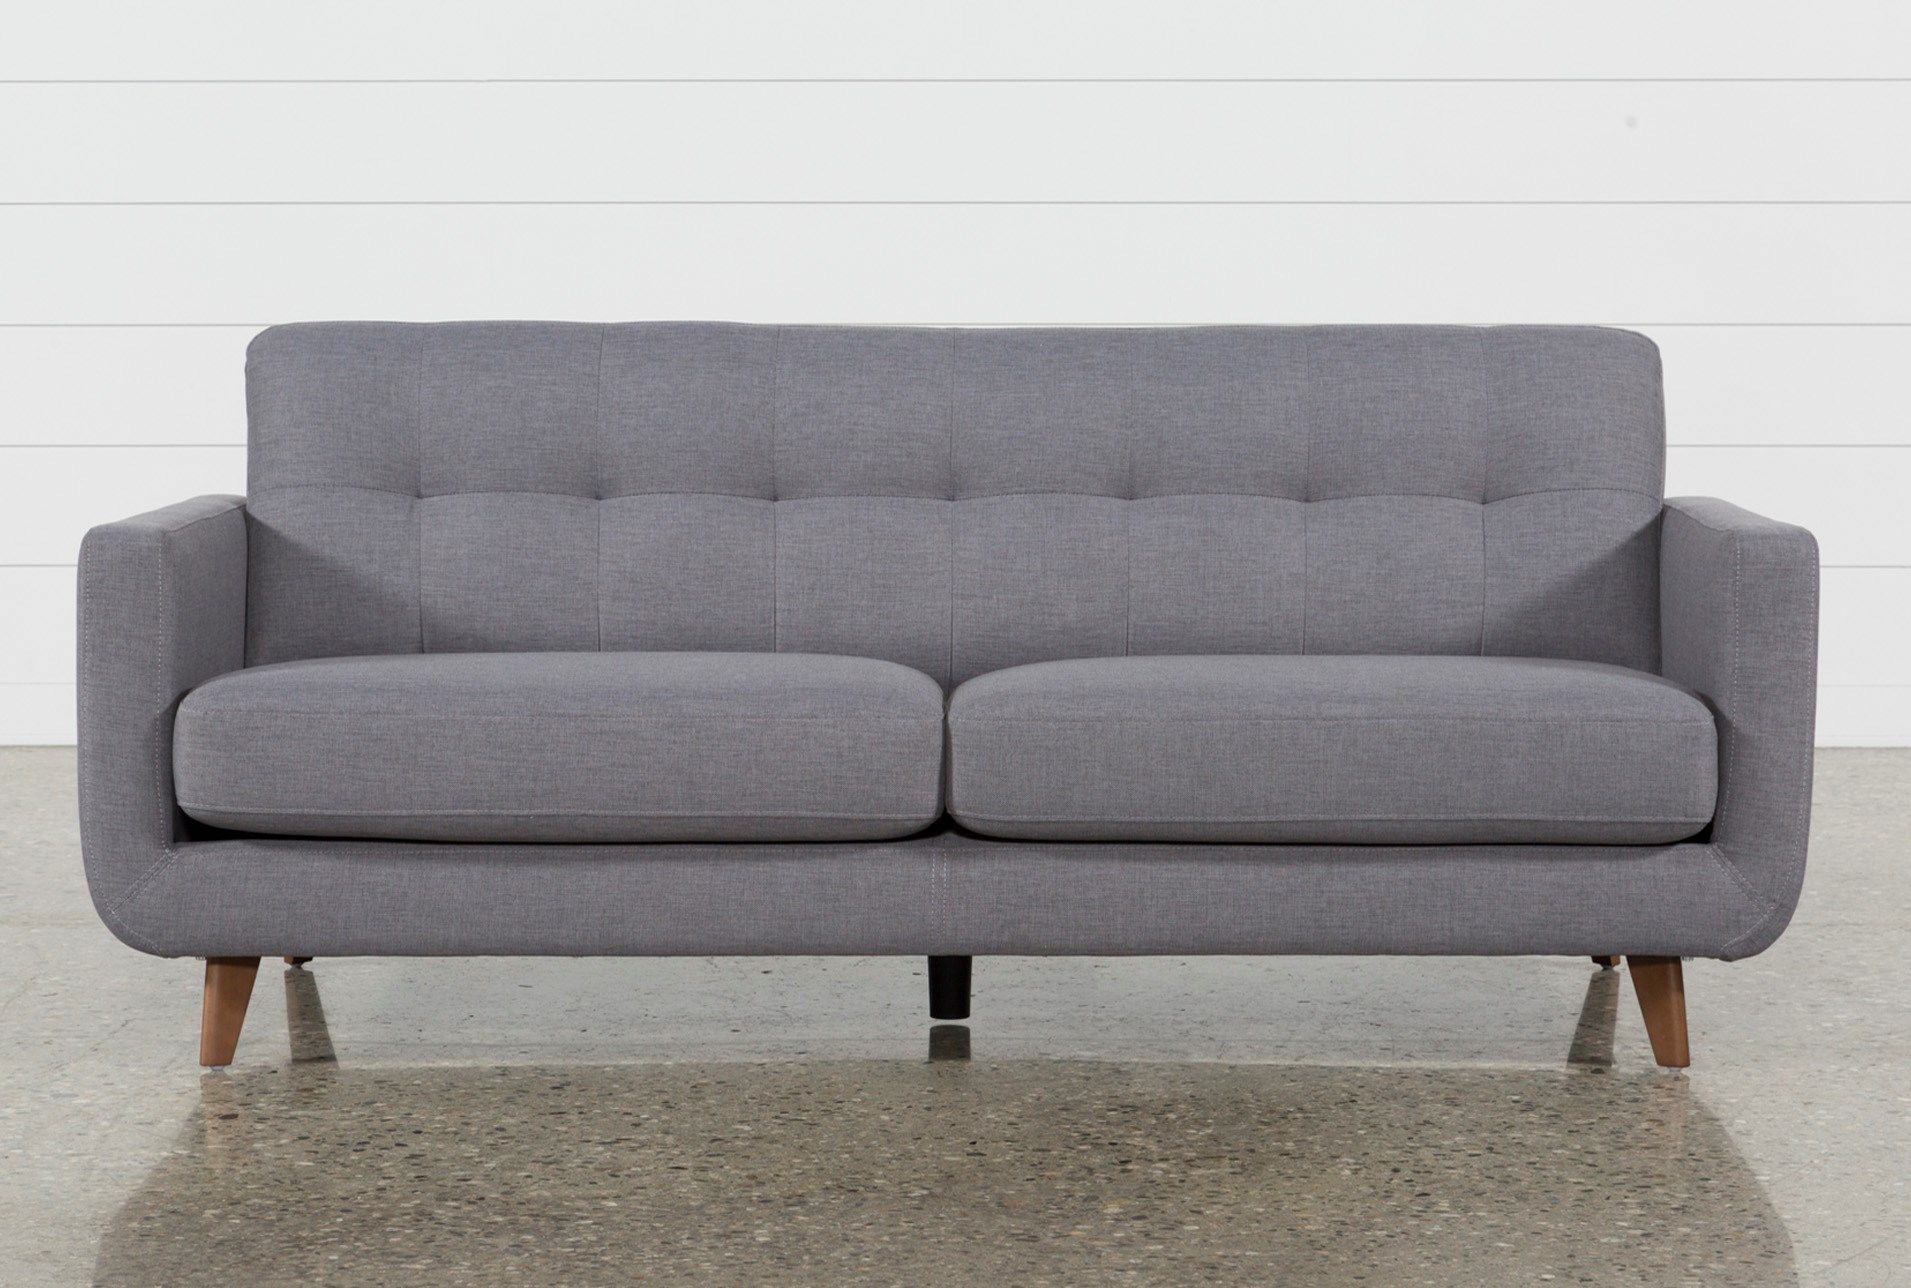 Allie Dark Grey Sofa In 2018 | Home Decor Ideas | Pinterest | Gray In Allie Dark Grey Sofa Chairs (View 2 of 20)